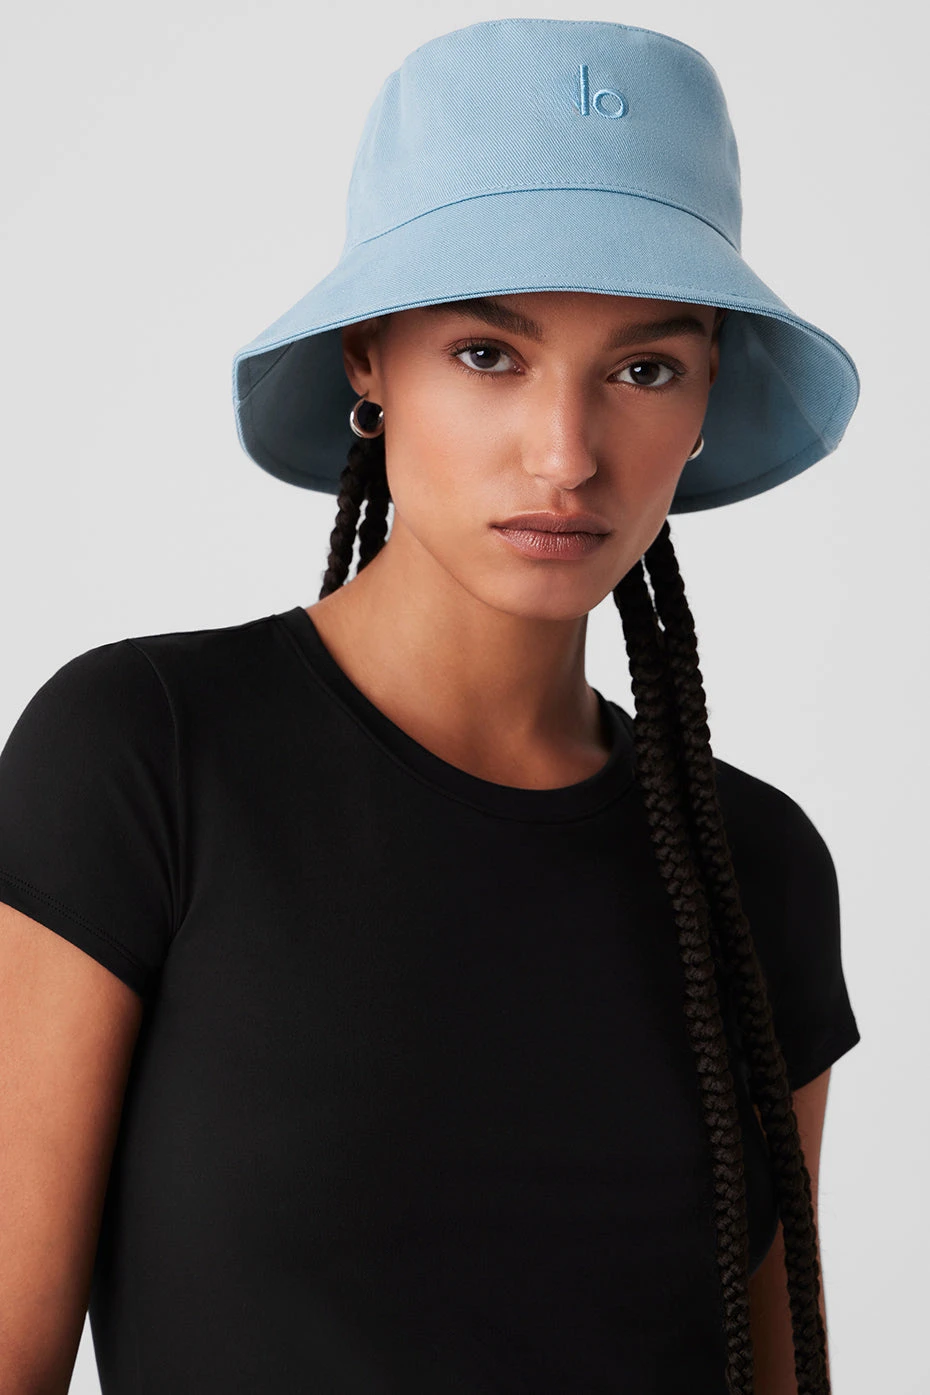 Lo Yoga Bucket Hat - Unisexe 100% coton Denim Upf 50 Place de voyage d'été embalable chapeau de soleil